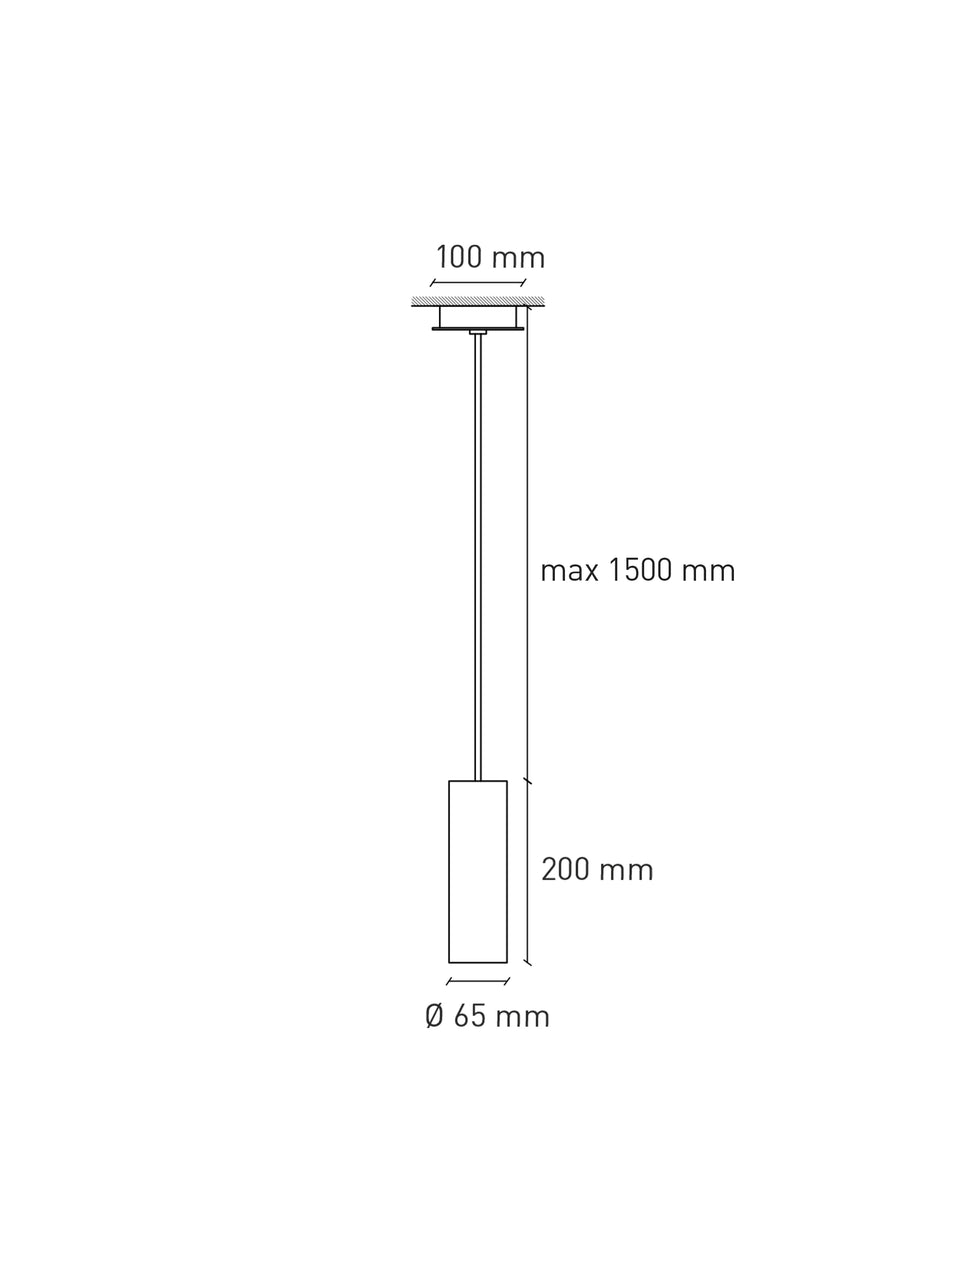 Cromia pendant lamp 20 cm